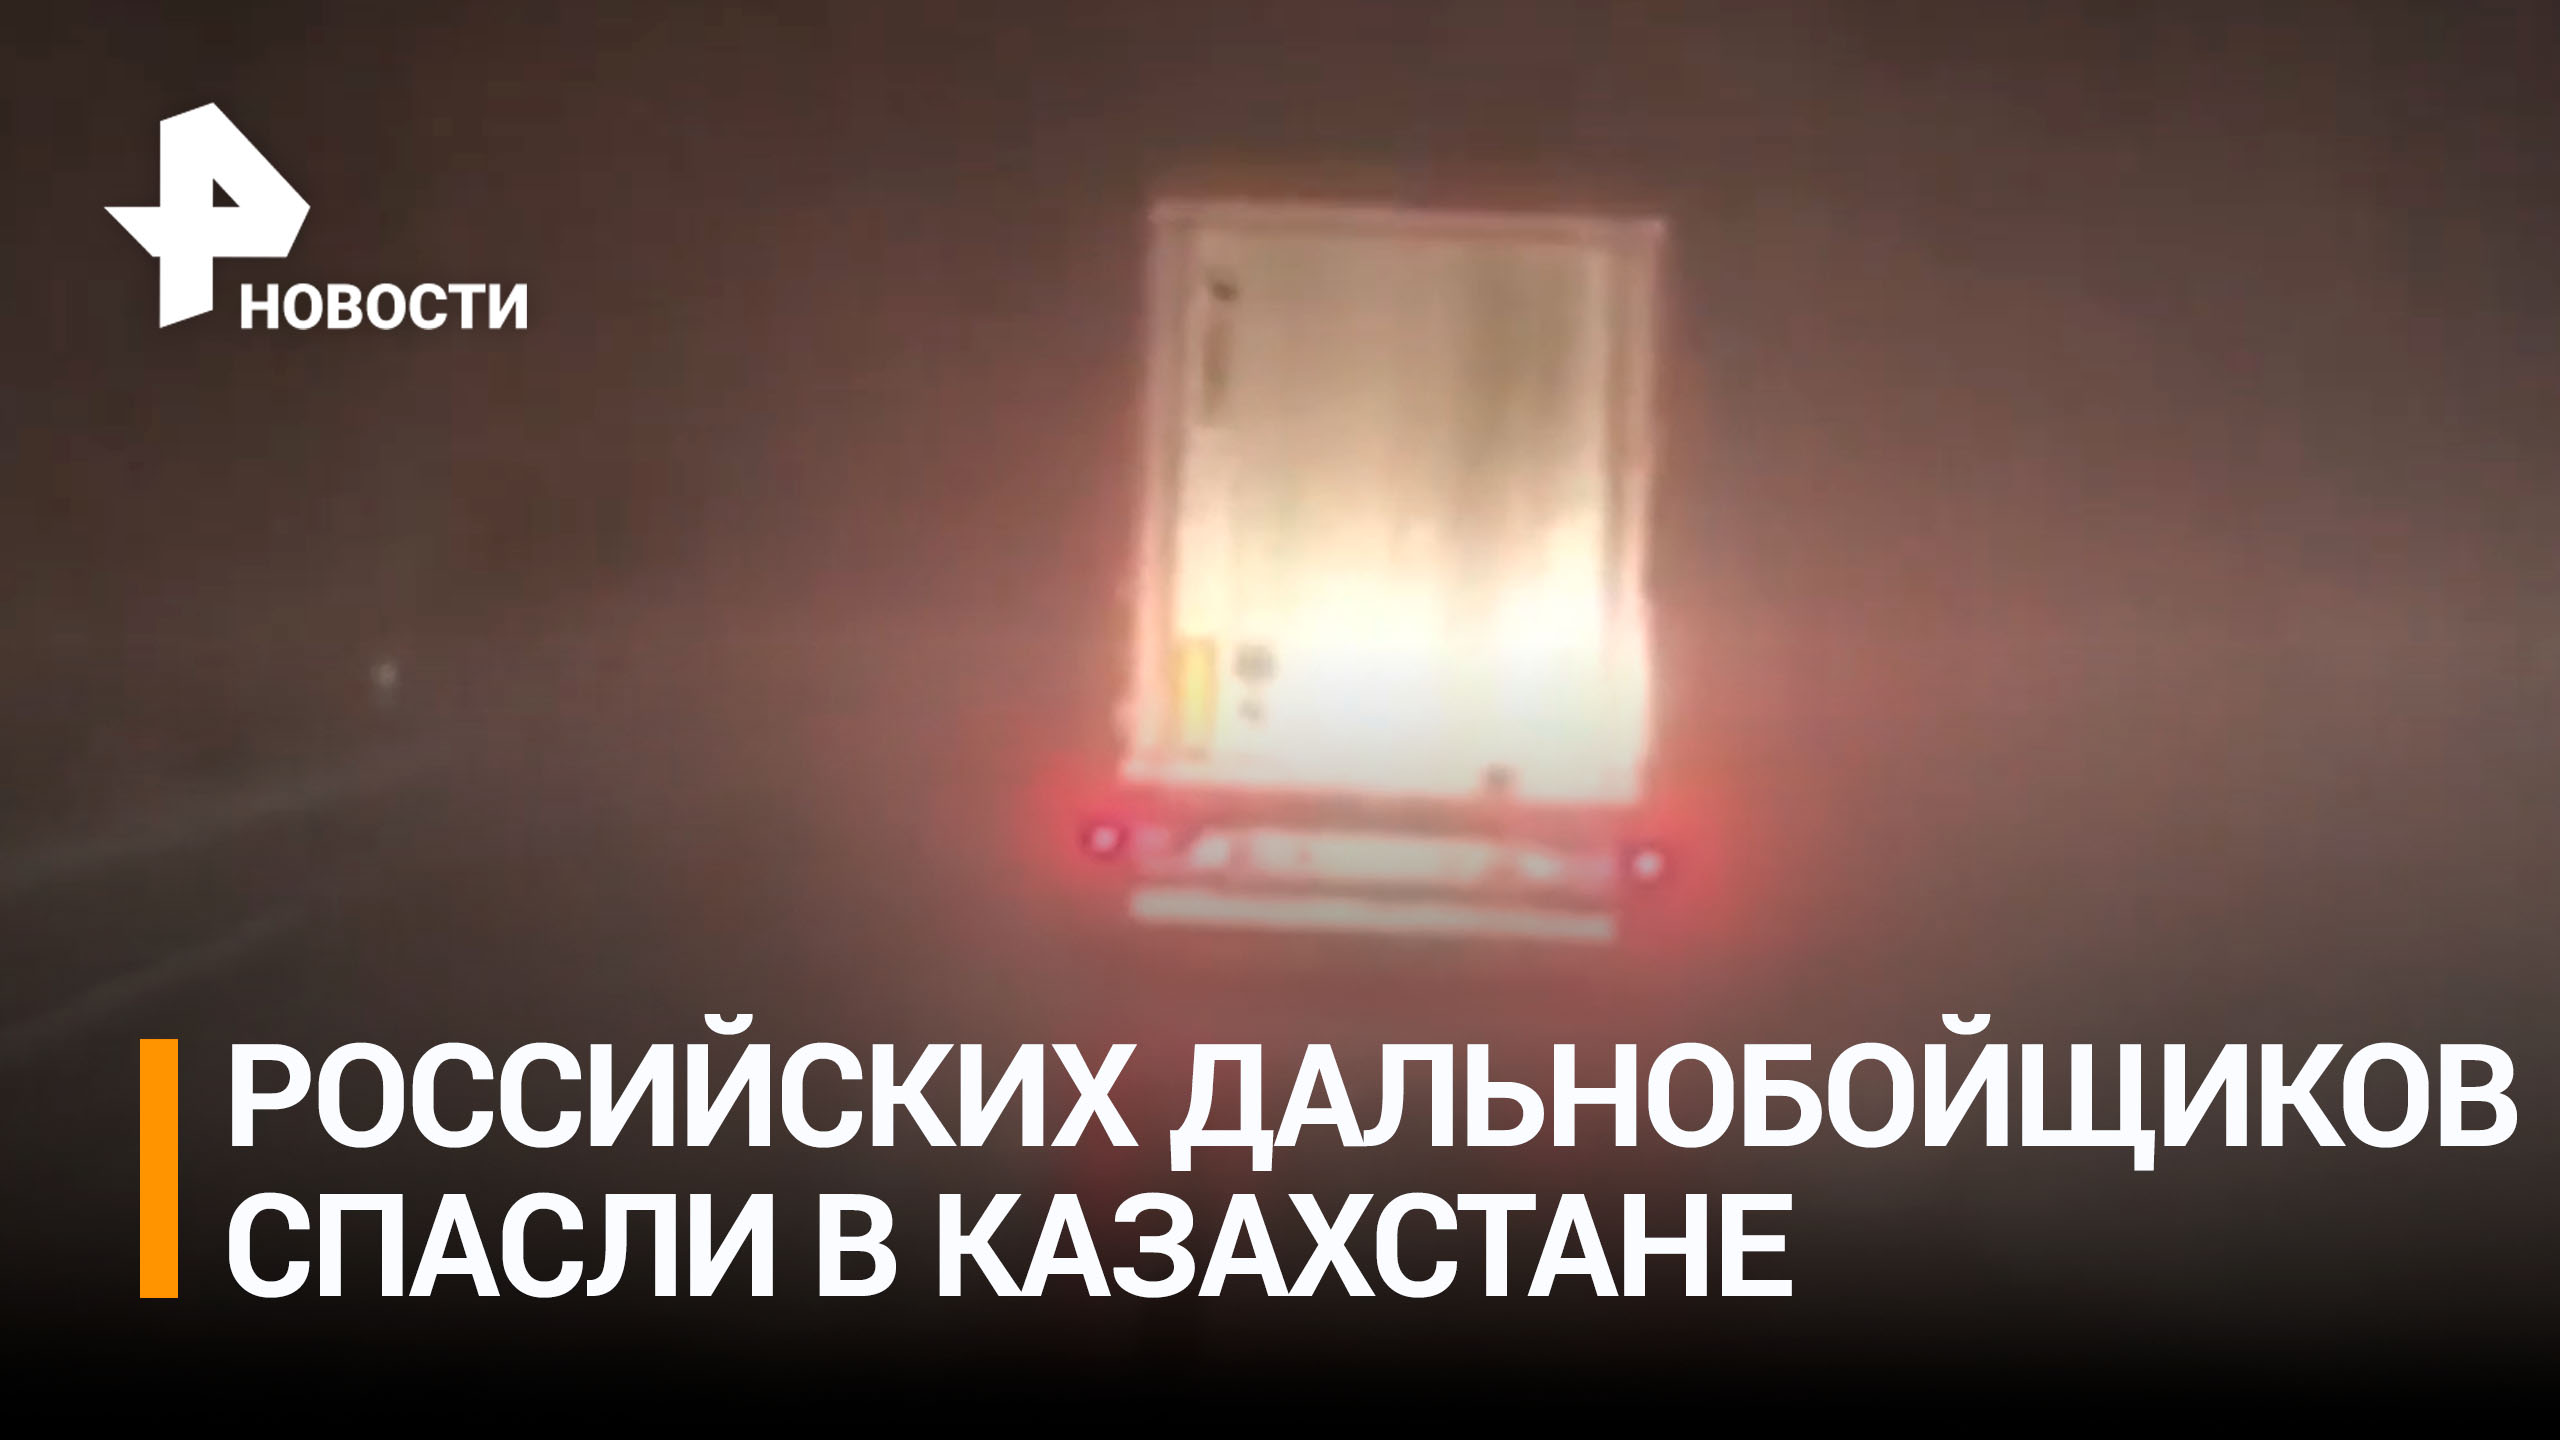 Застрявших в Казахстане российских дальнобойщиков спасли / РЕН Новости